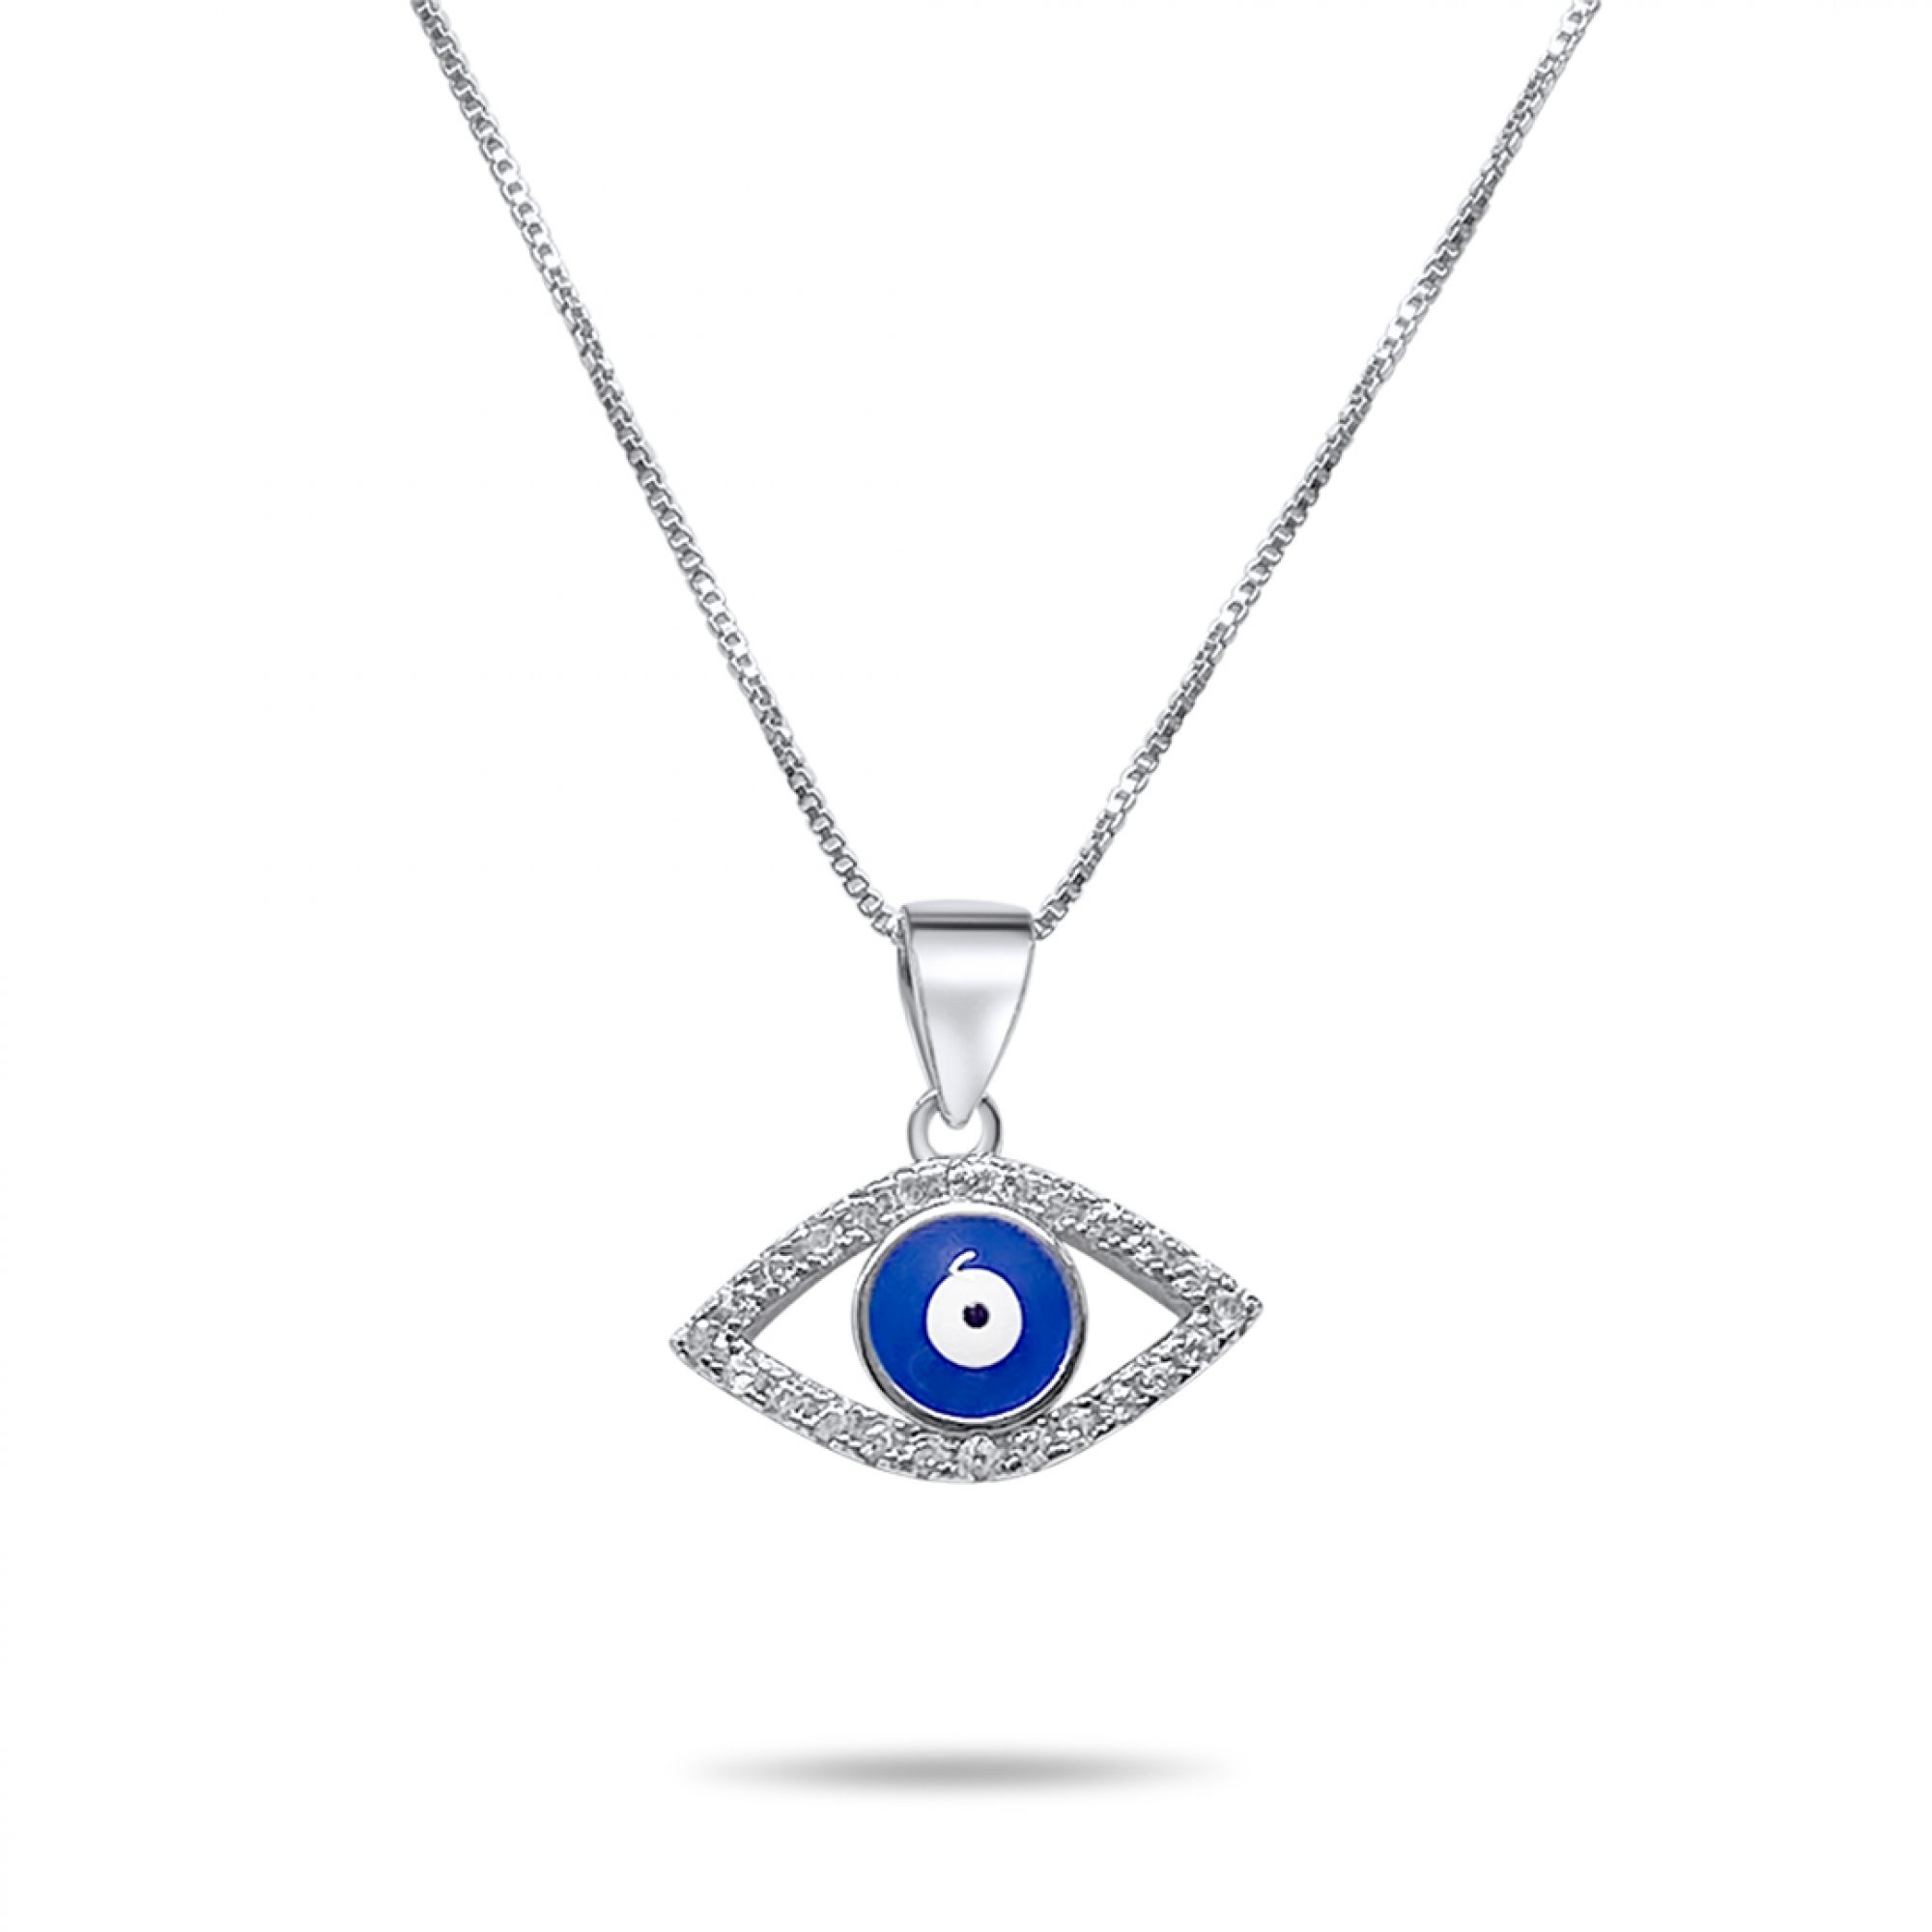 Eye pendant necklace with zircon stones